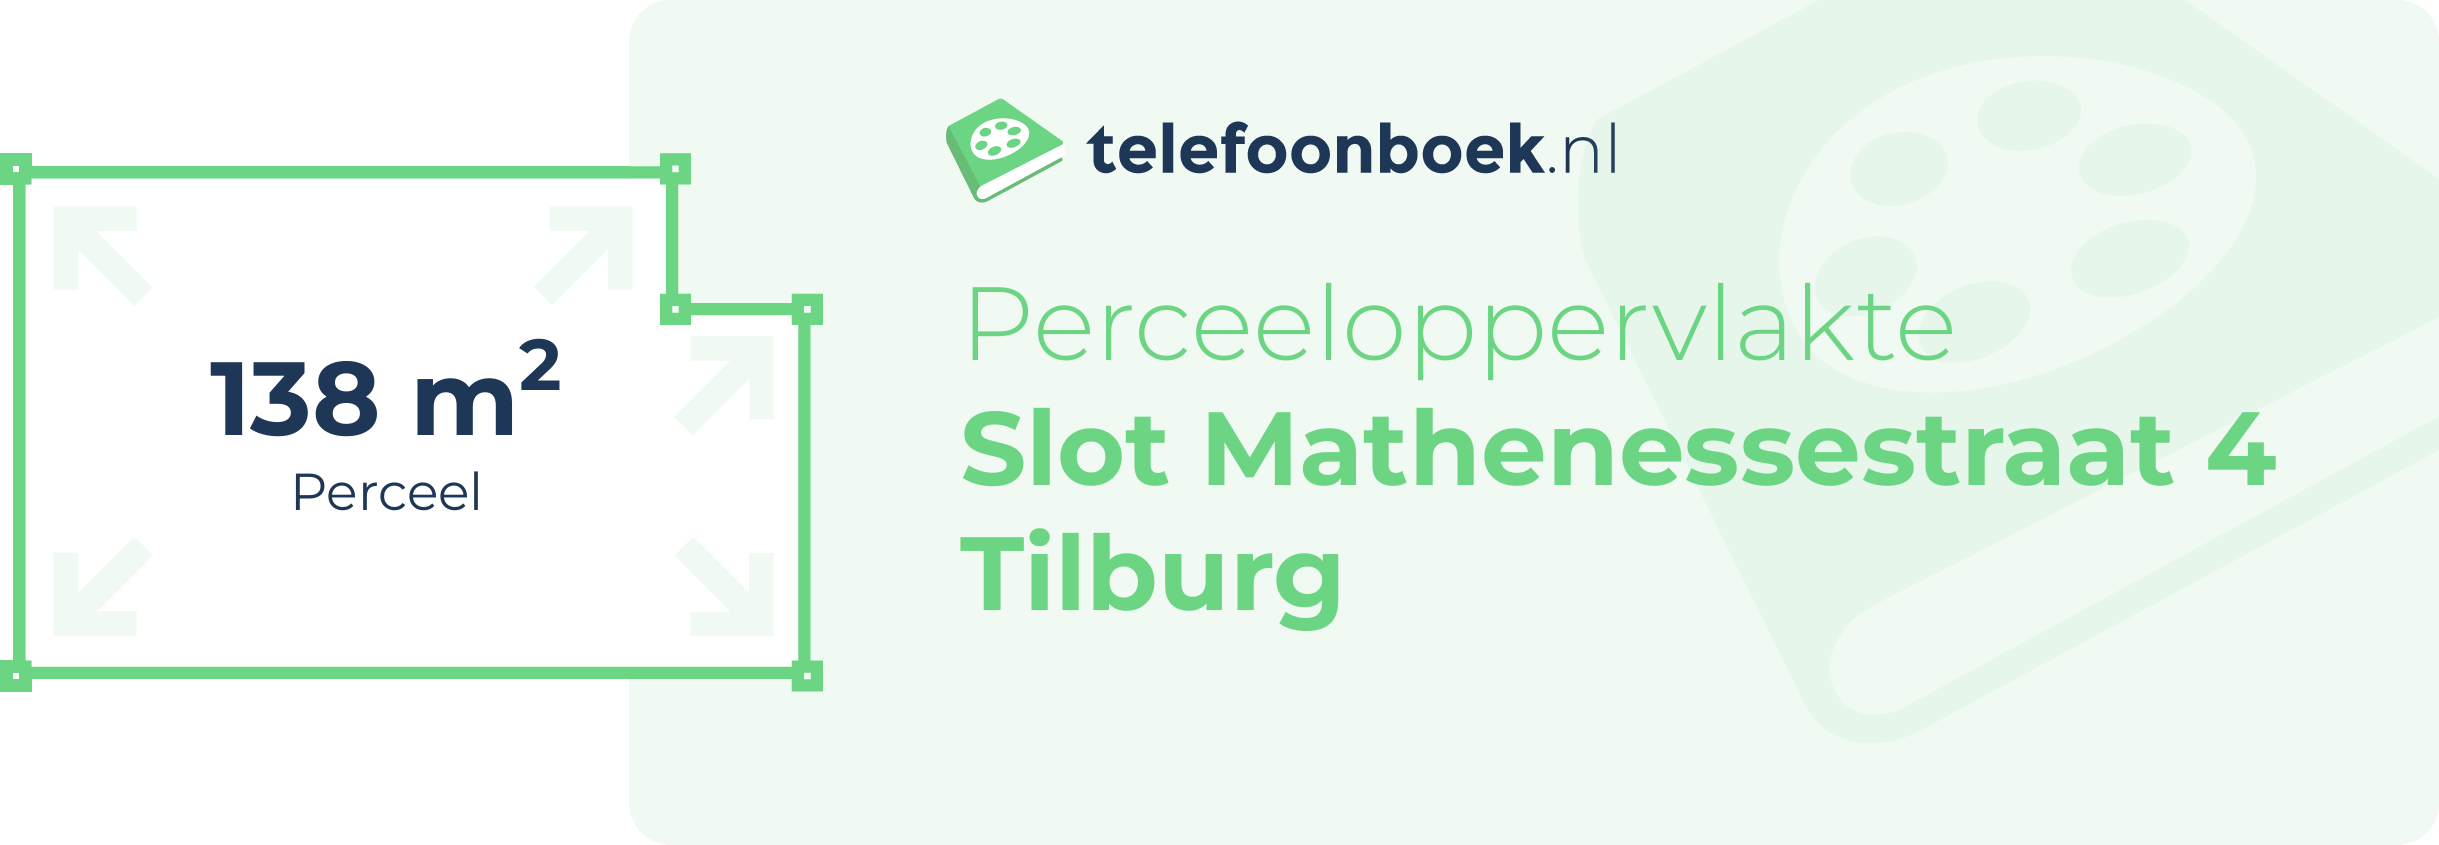 Perceeloppervlakte Slot Mathenessestraat 4 Tilburg